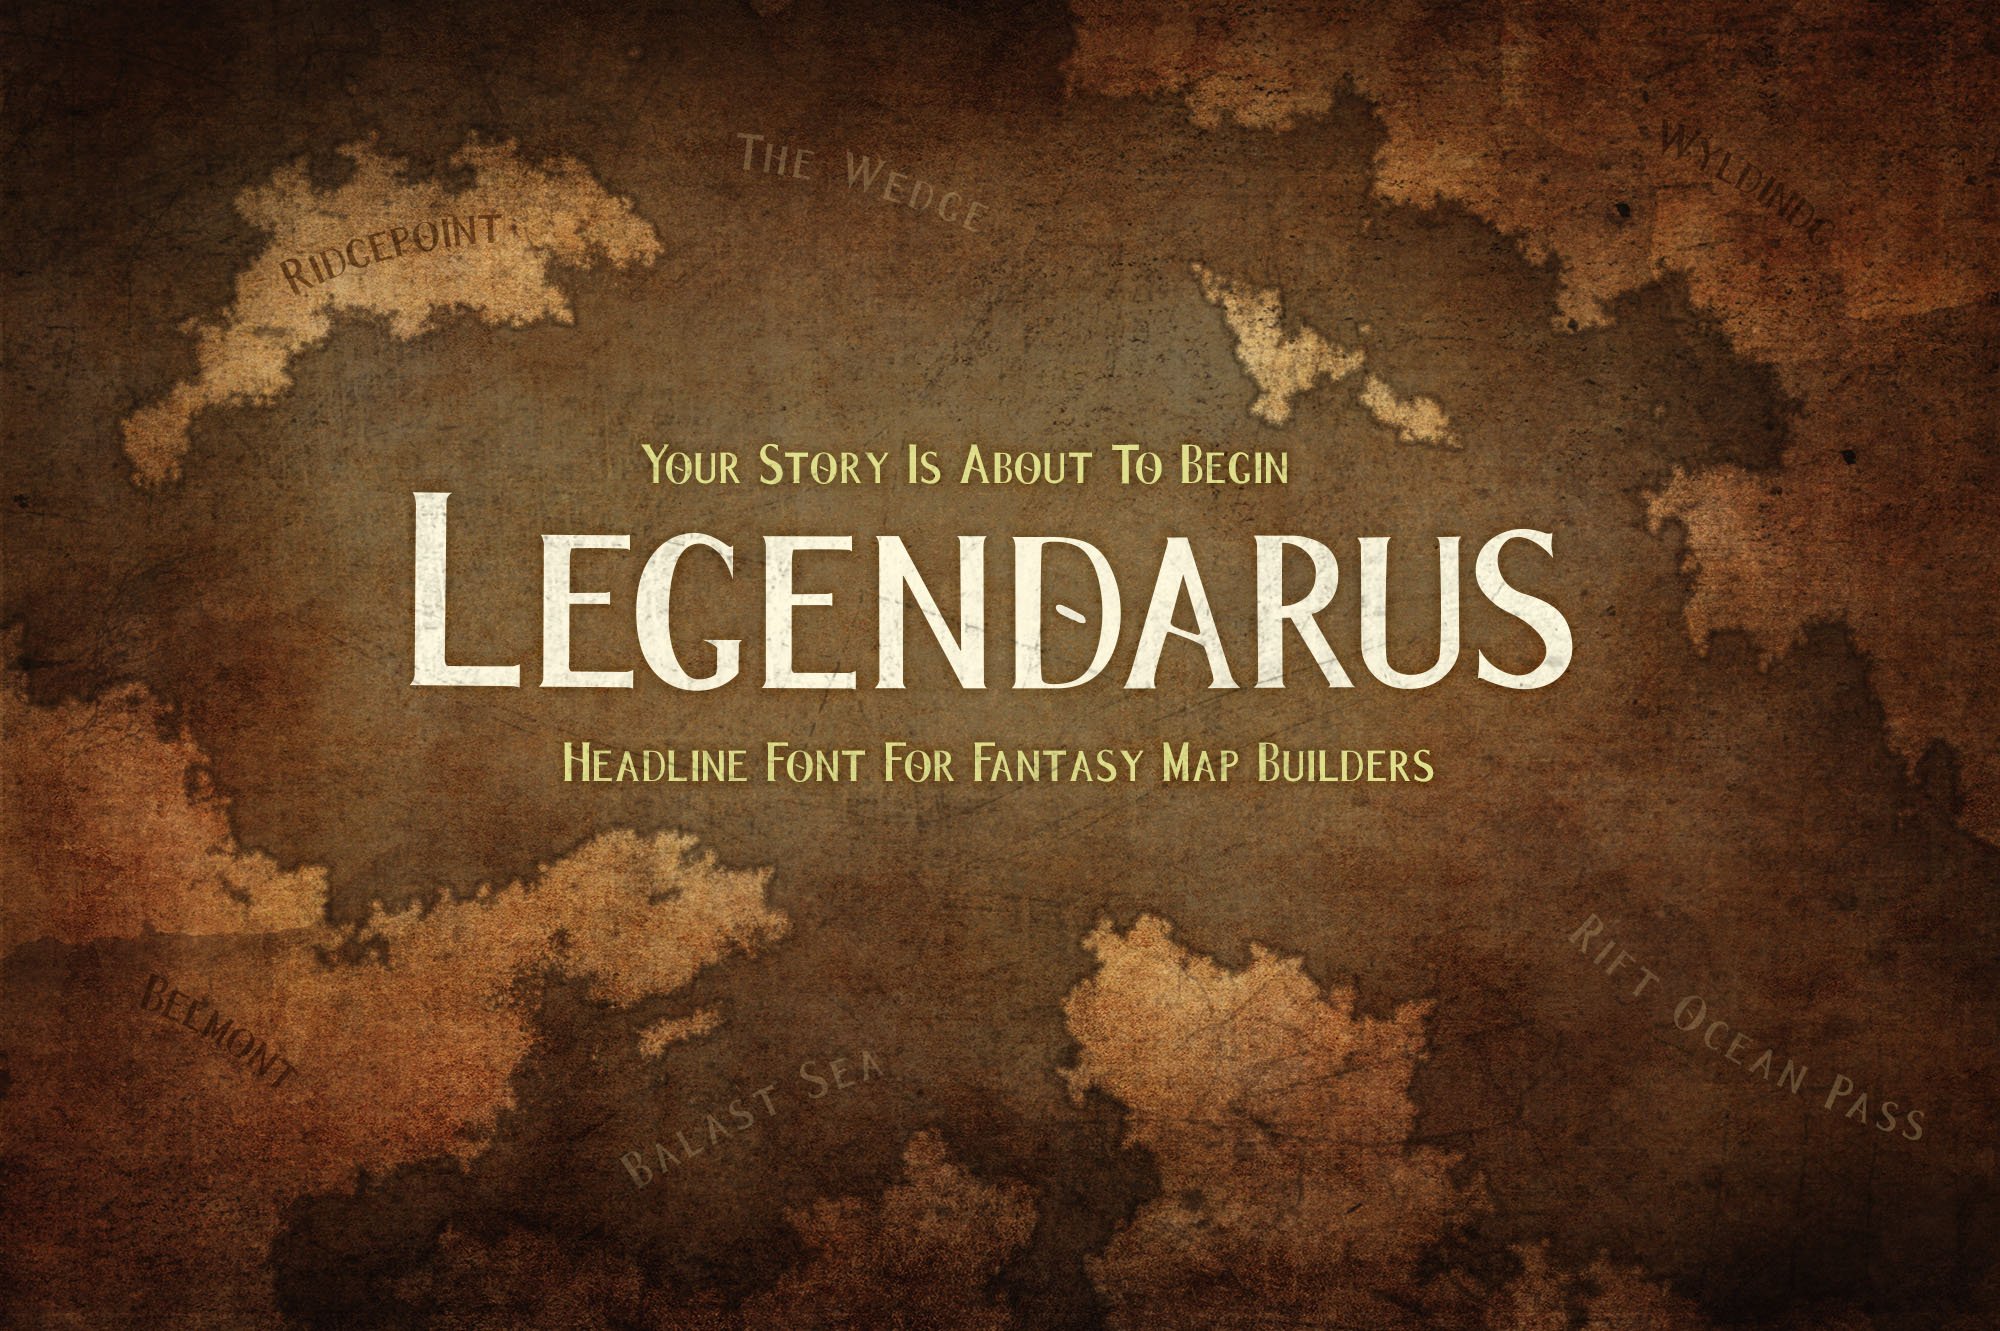 Legendarus - Cover.jpg